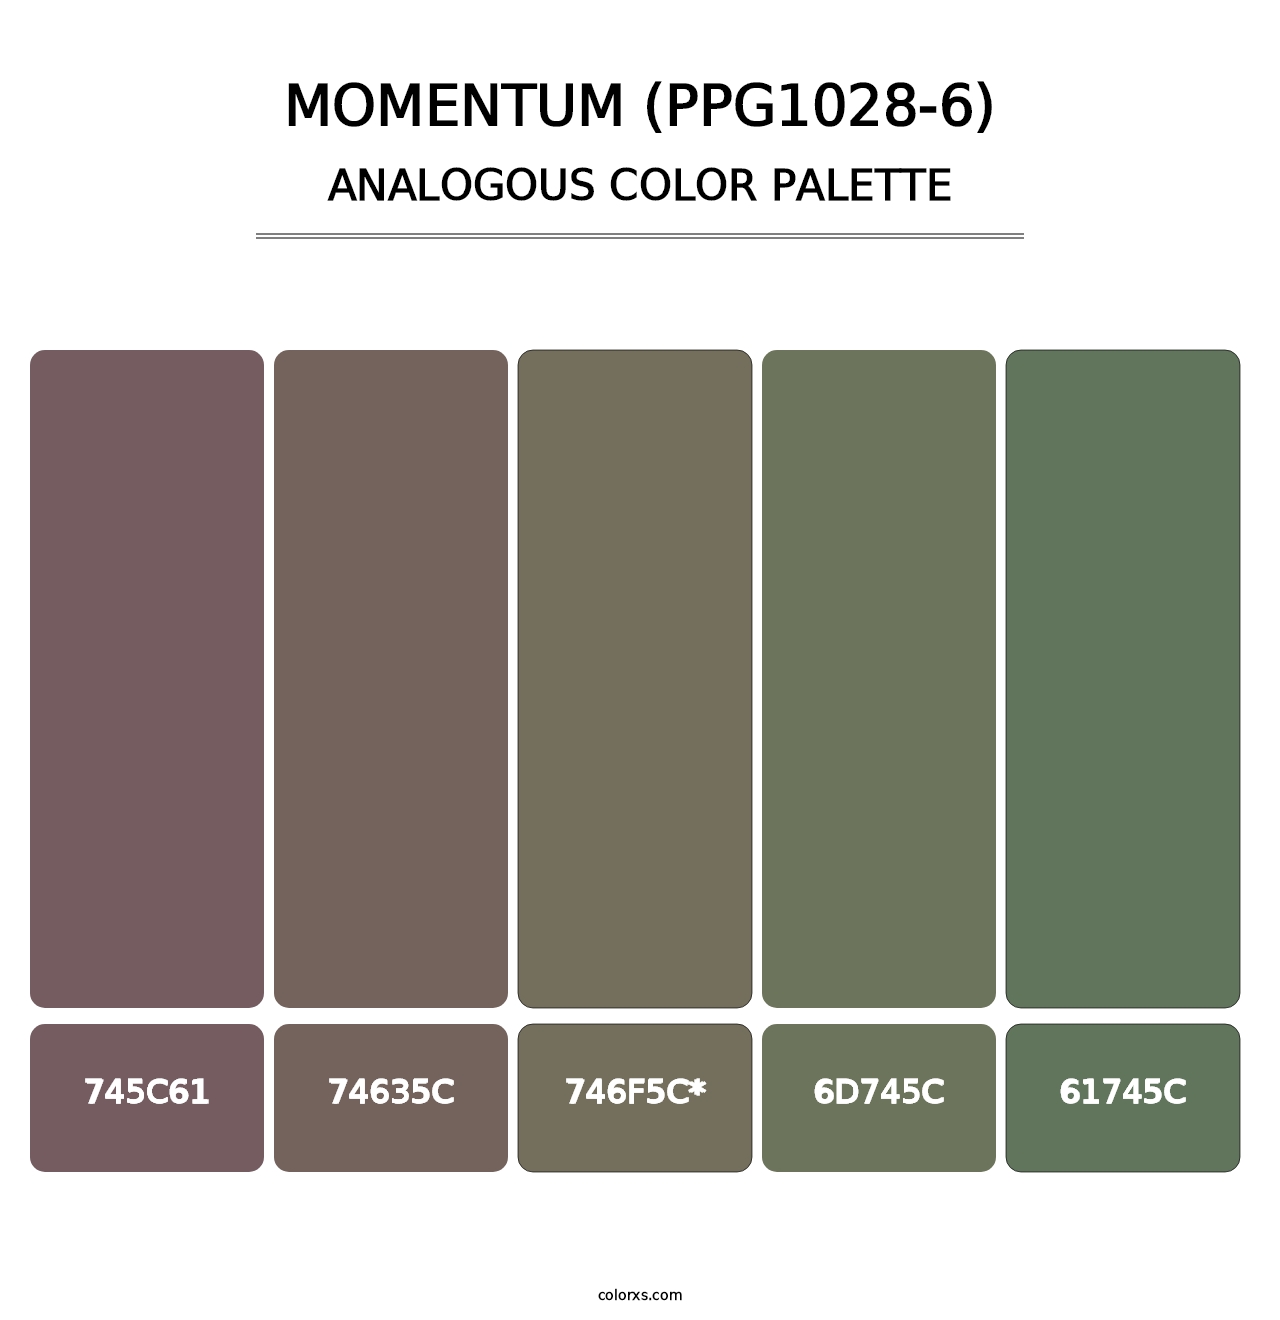 Momentum (PPG1028-6) - Analogous Color Palette